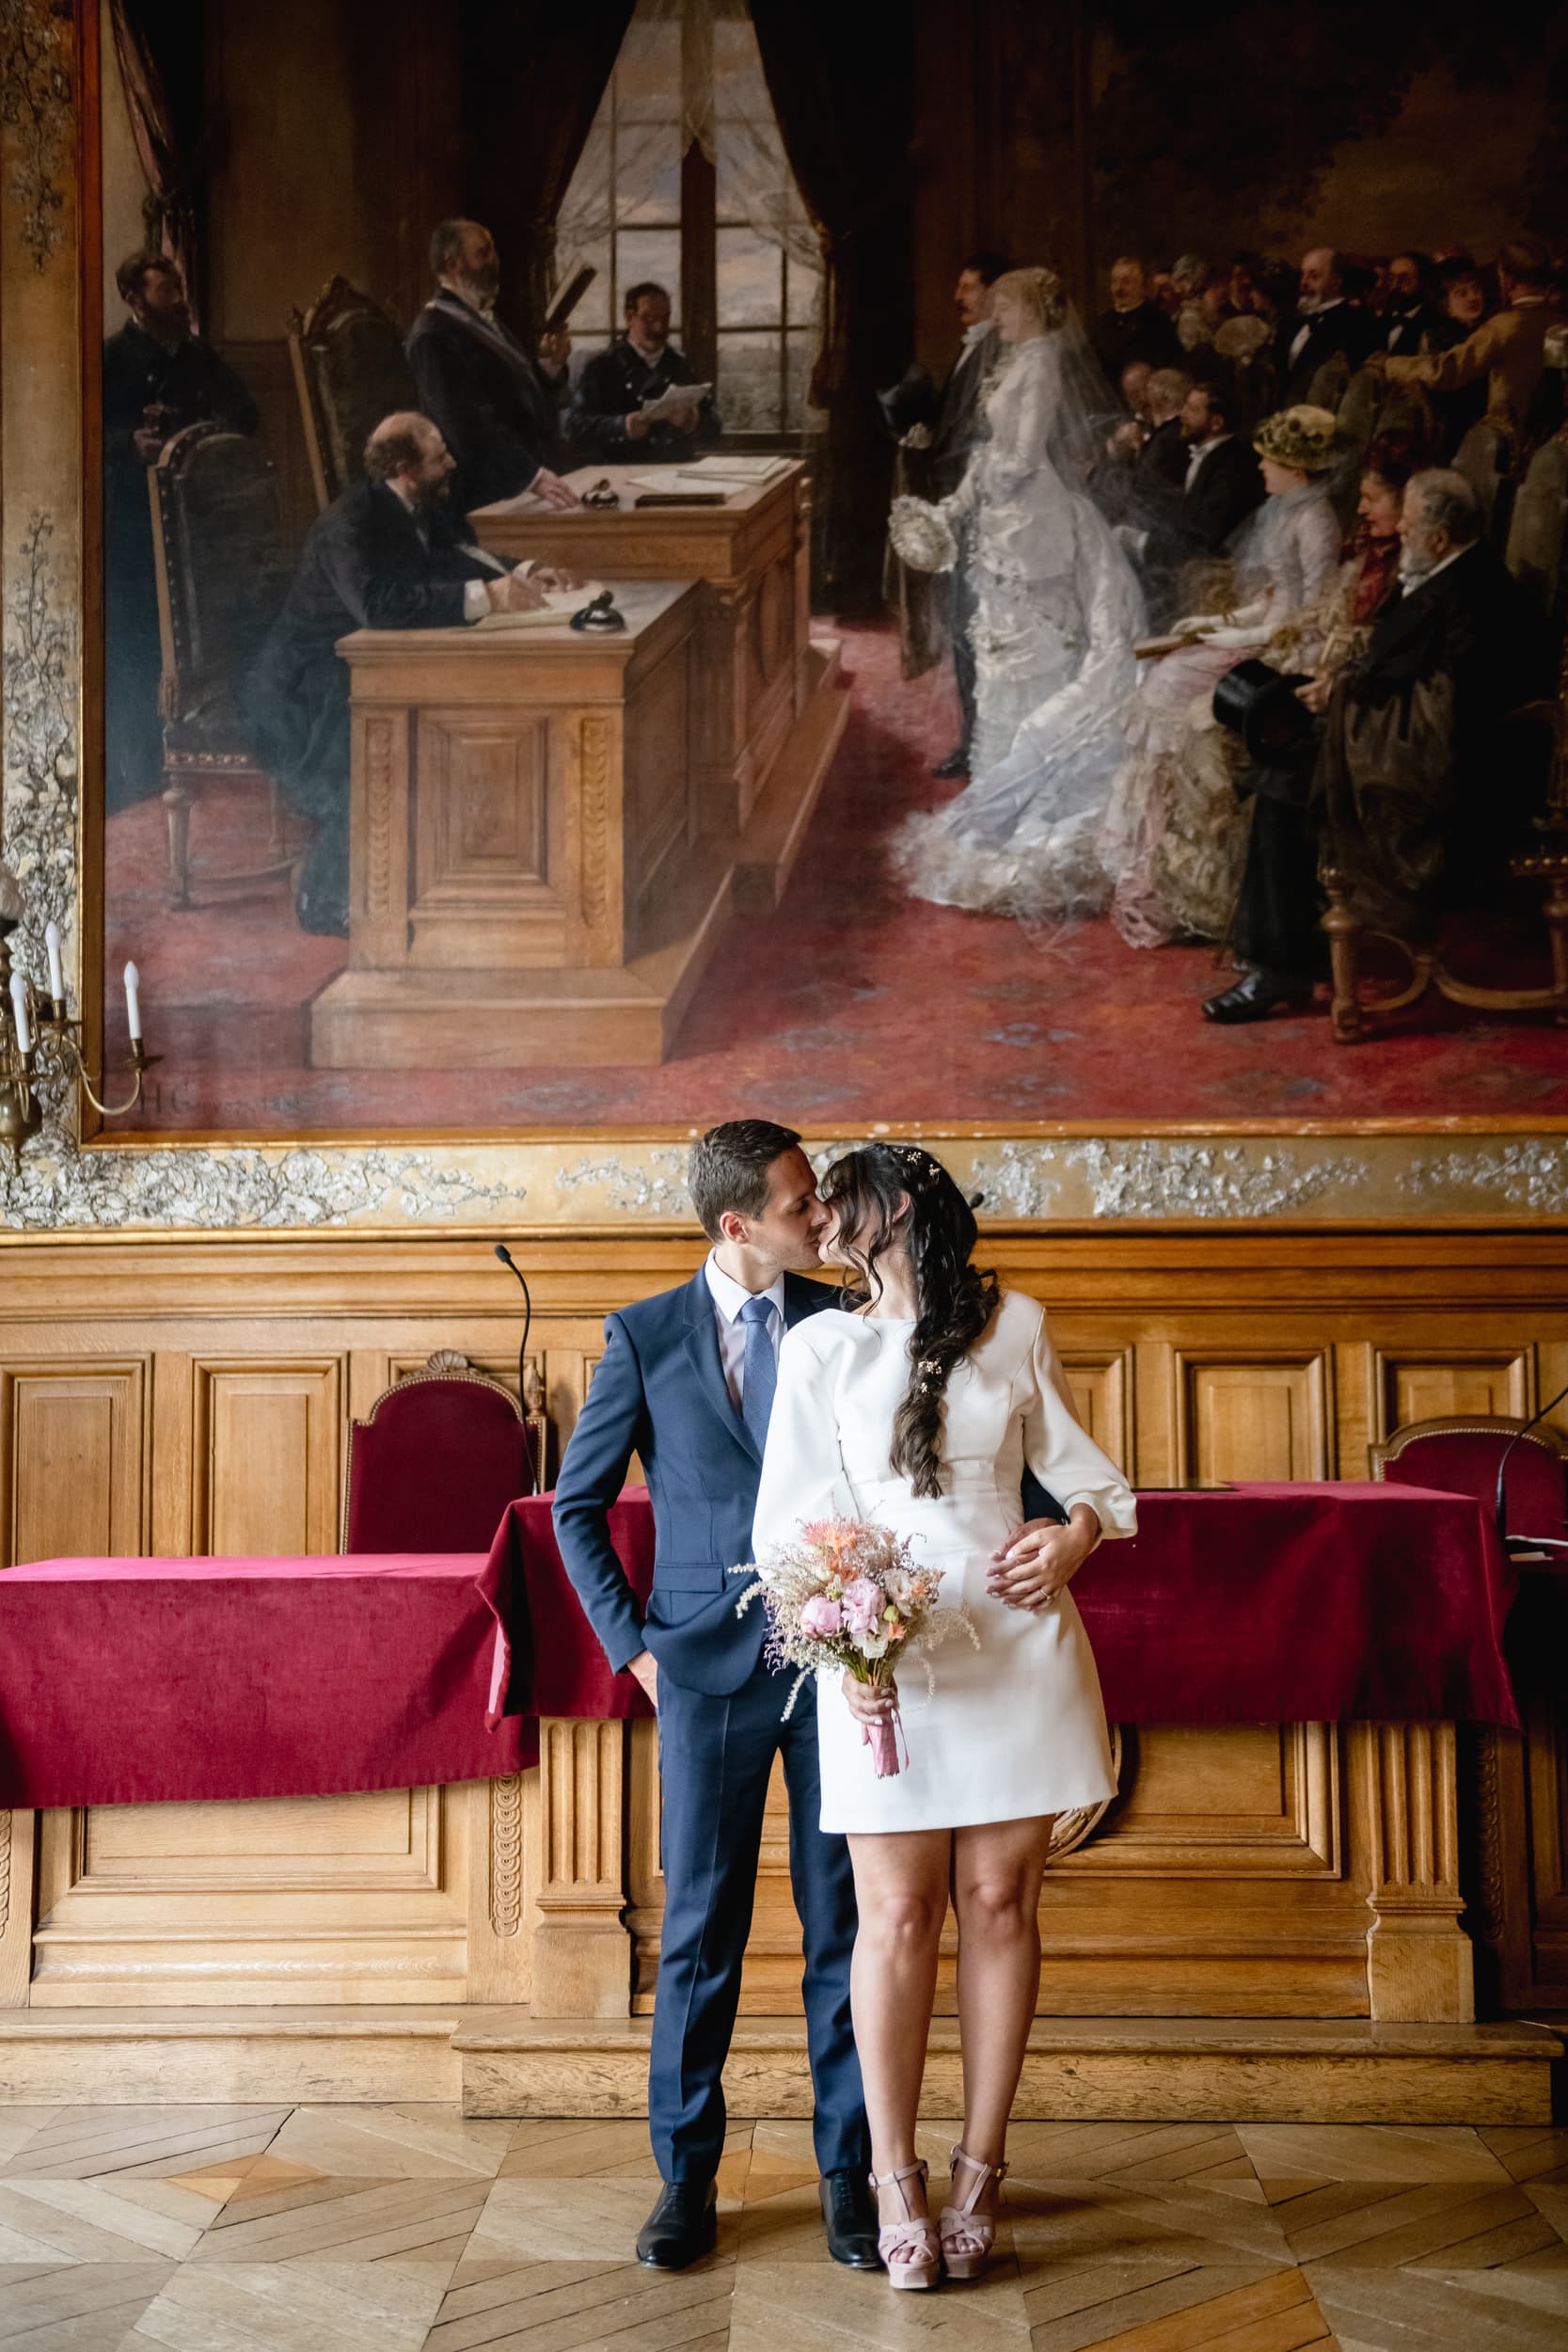 Photographe de mariage mairie 75019 paris